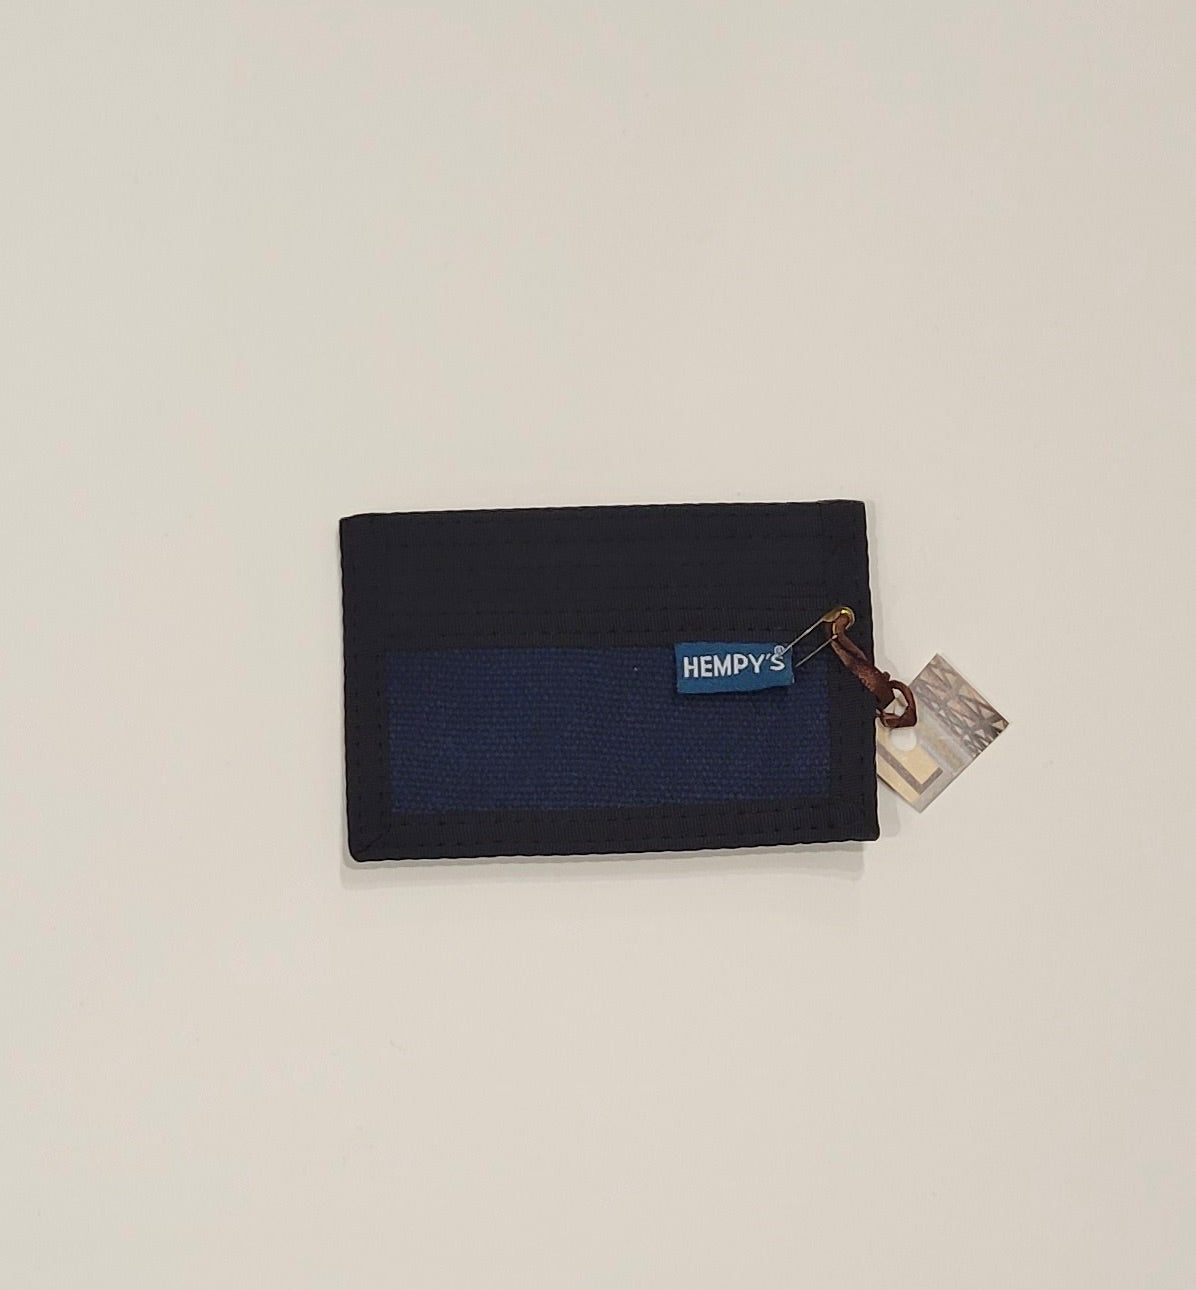 Hempy’s Minimizer Wallet